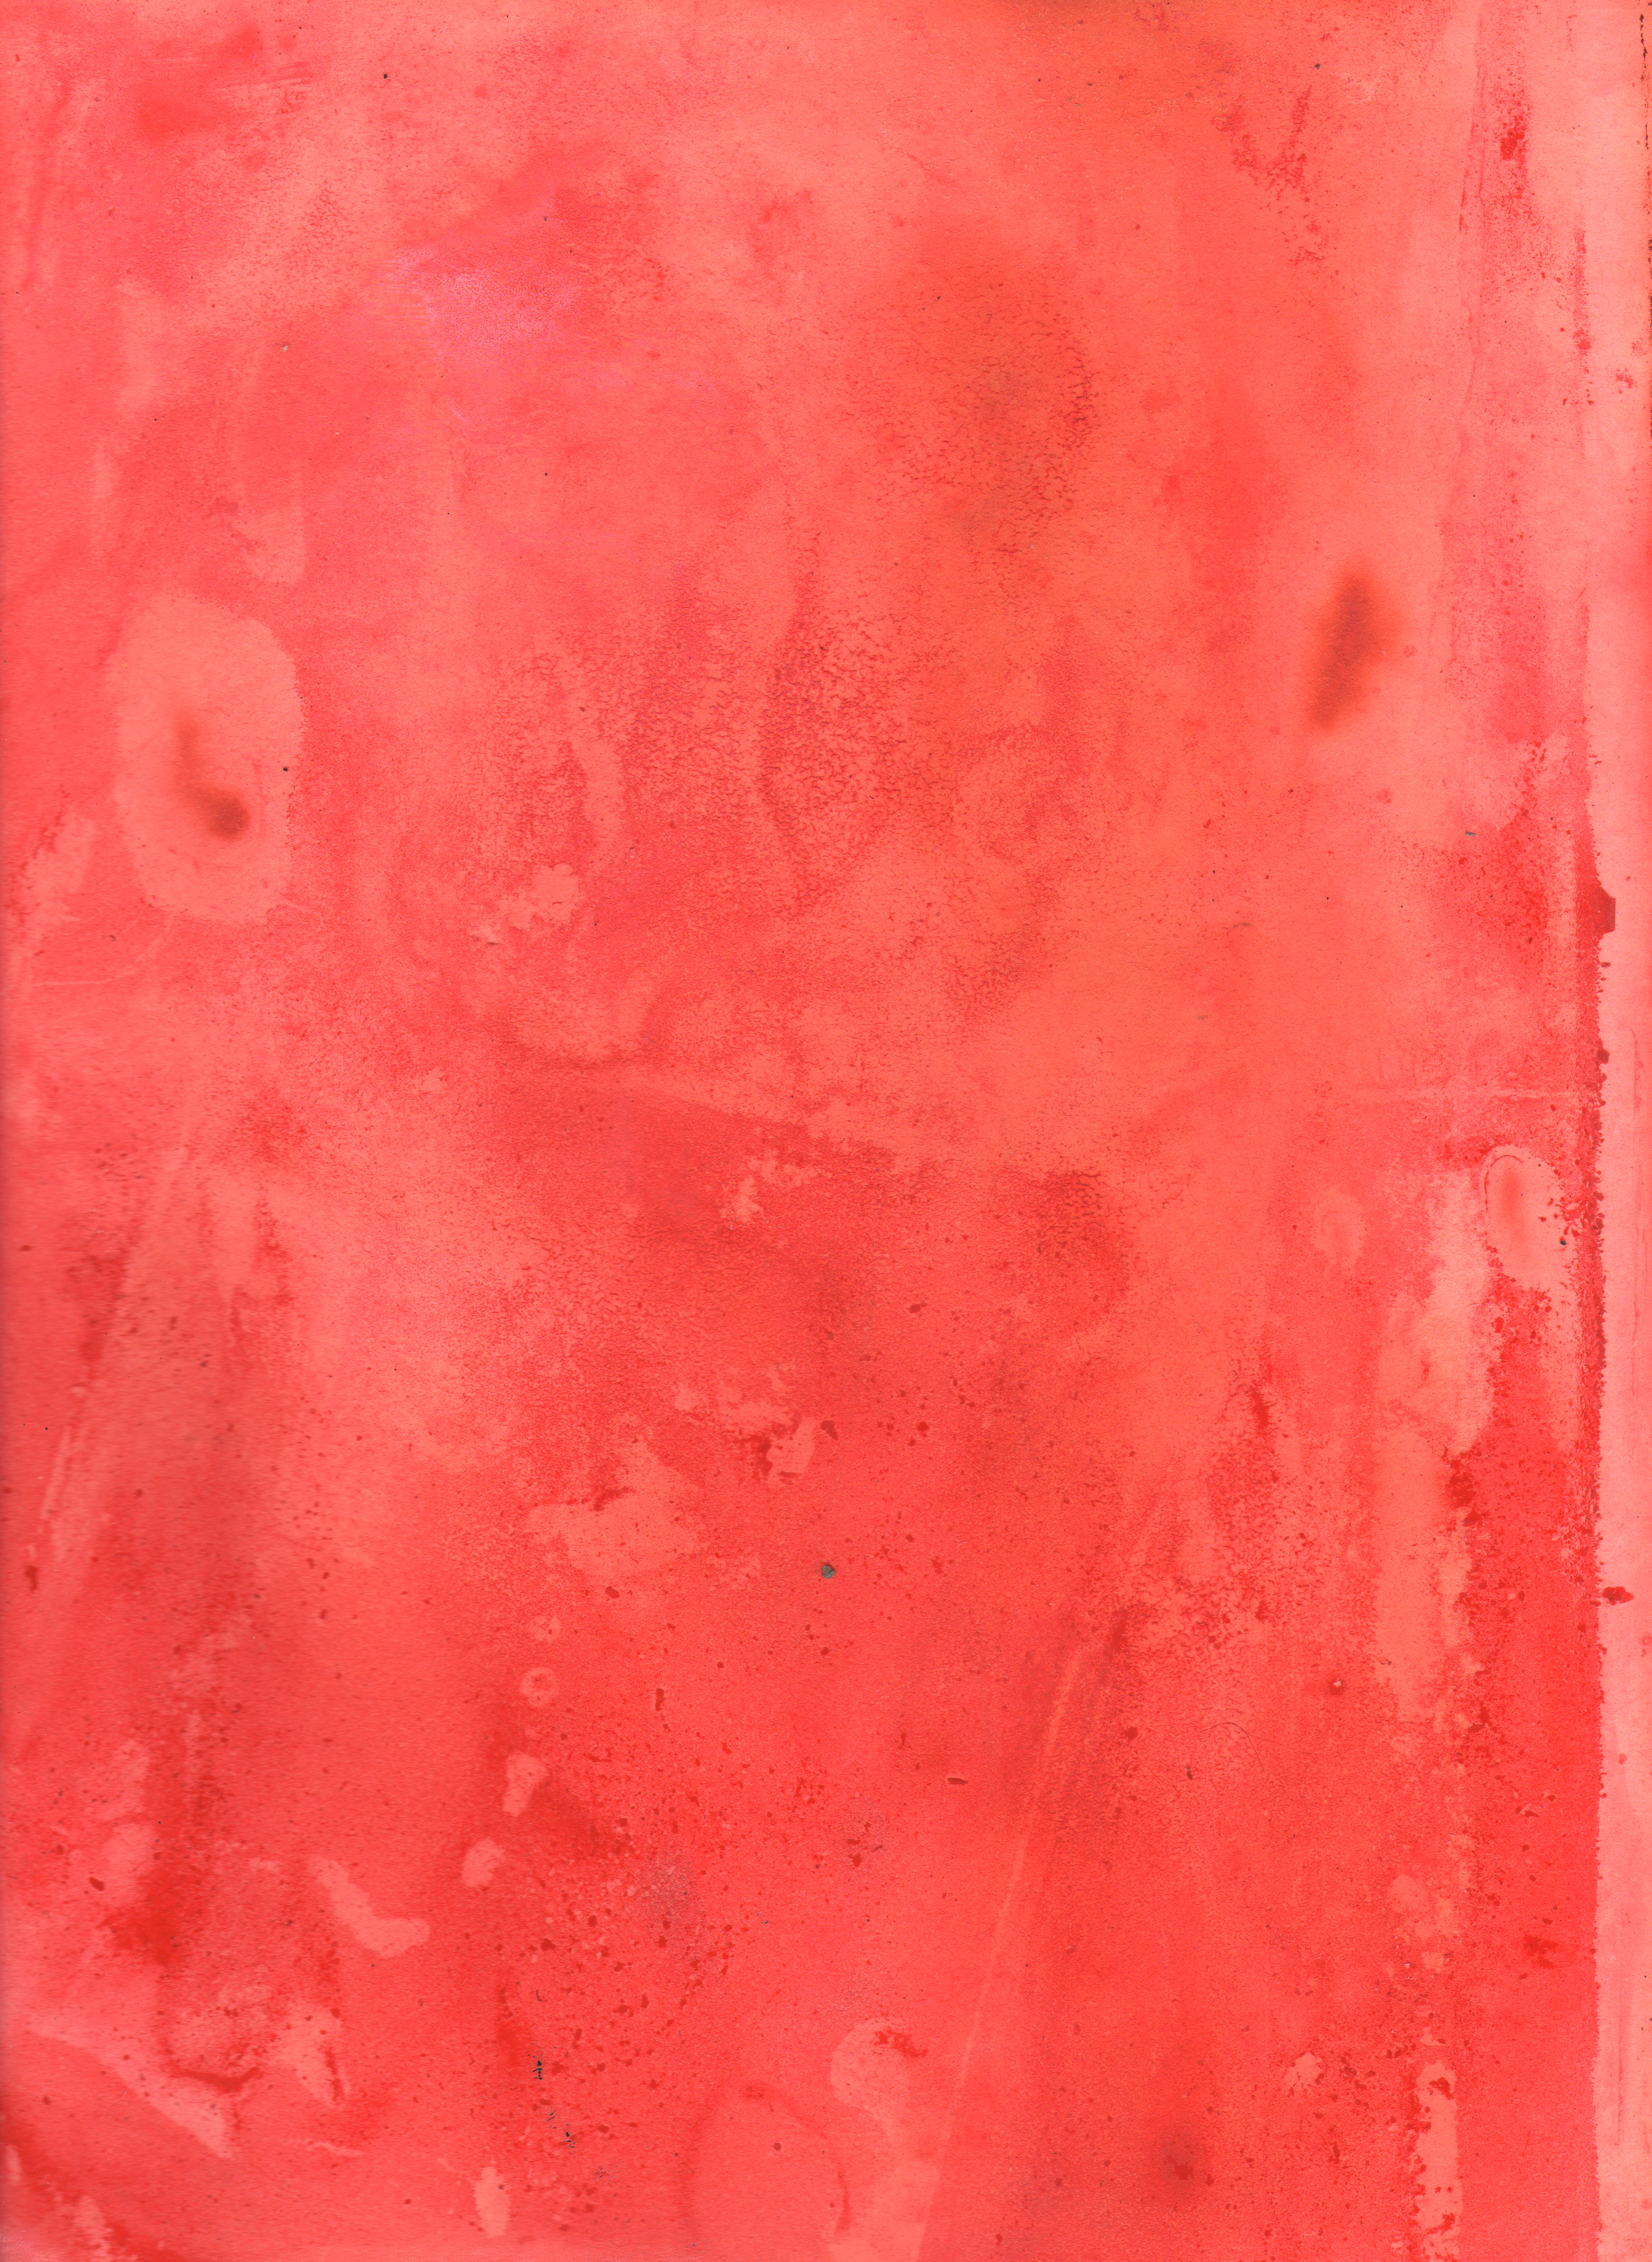 General 2545x3484 texture minimalism red portrait display closeup